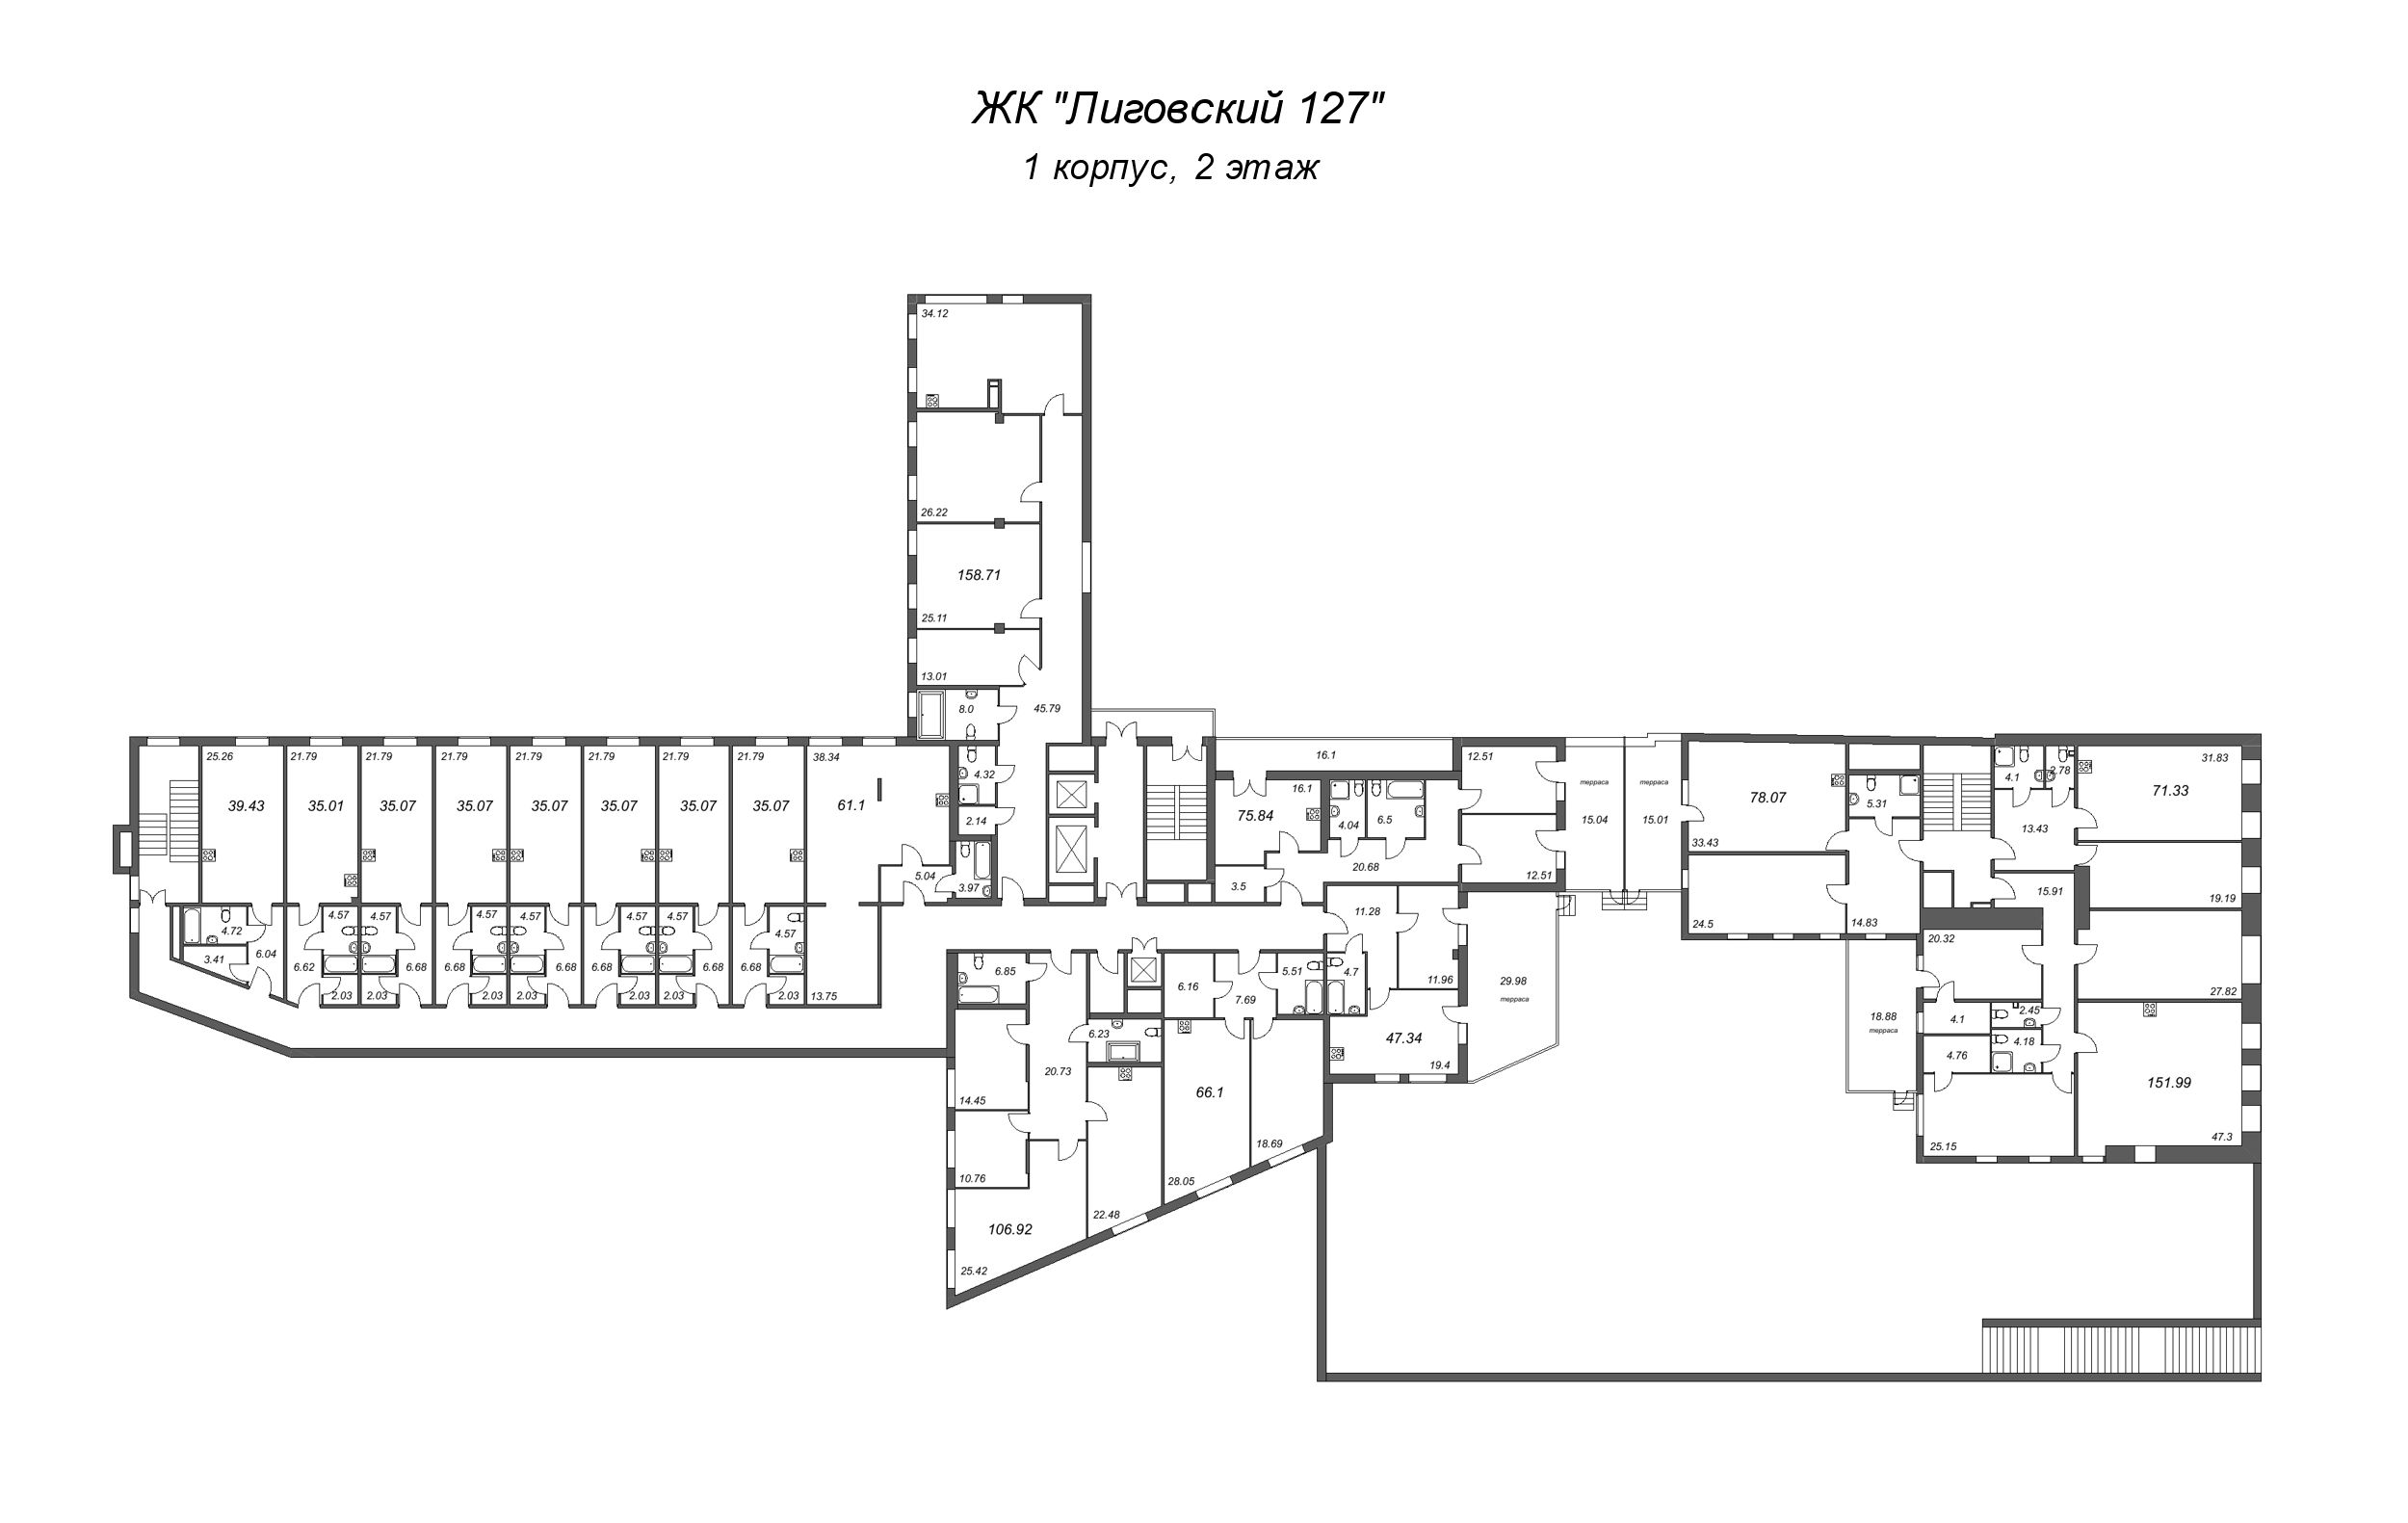 Квартира-студия, 34.32 м² в ЖК "Лиговский 127" - планировка этажа